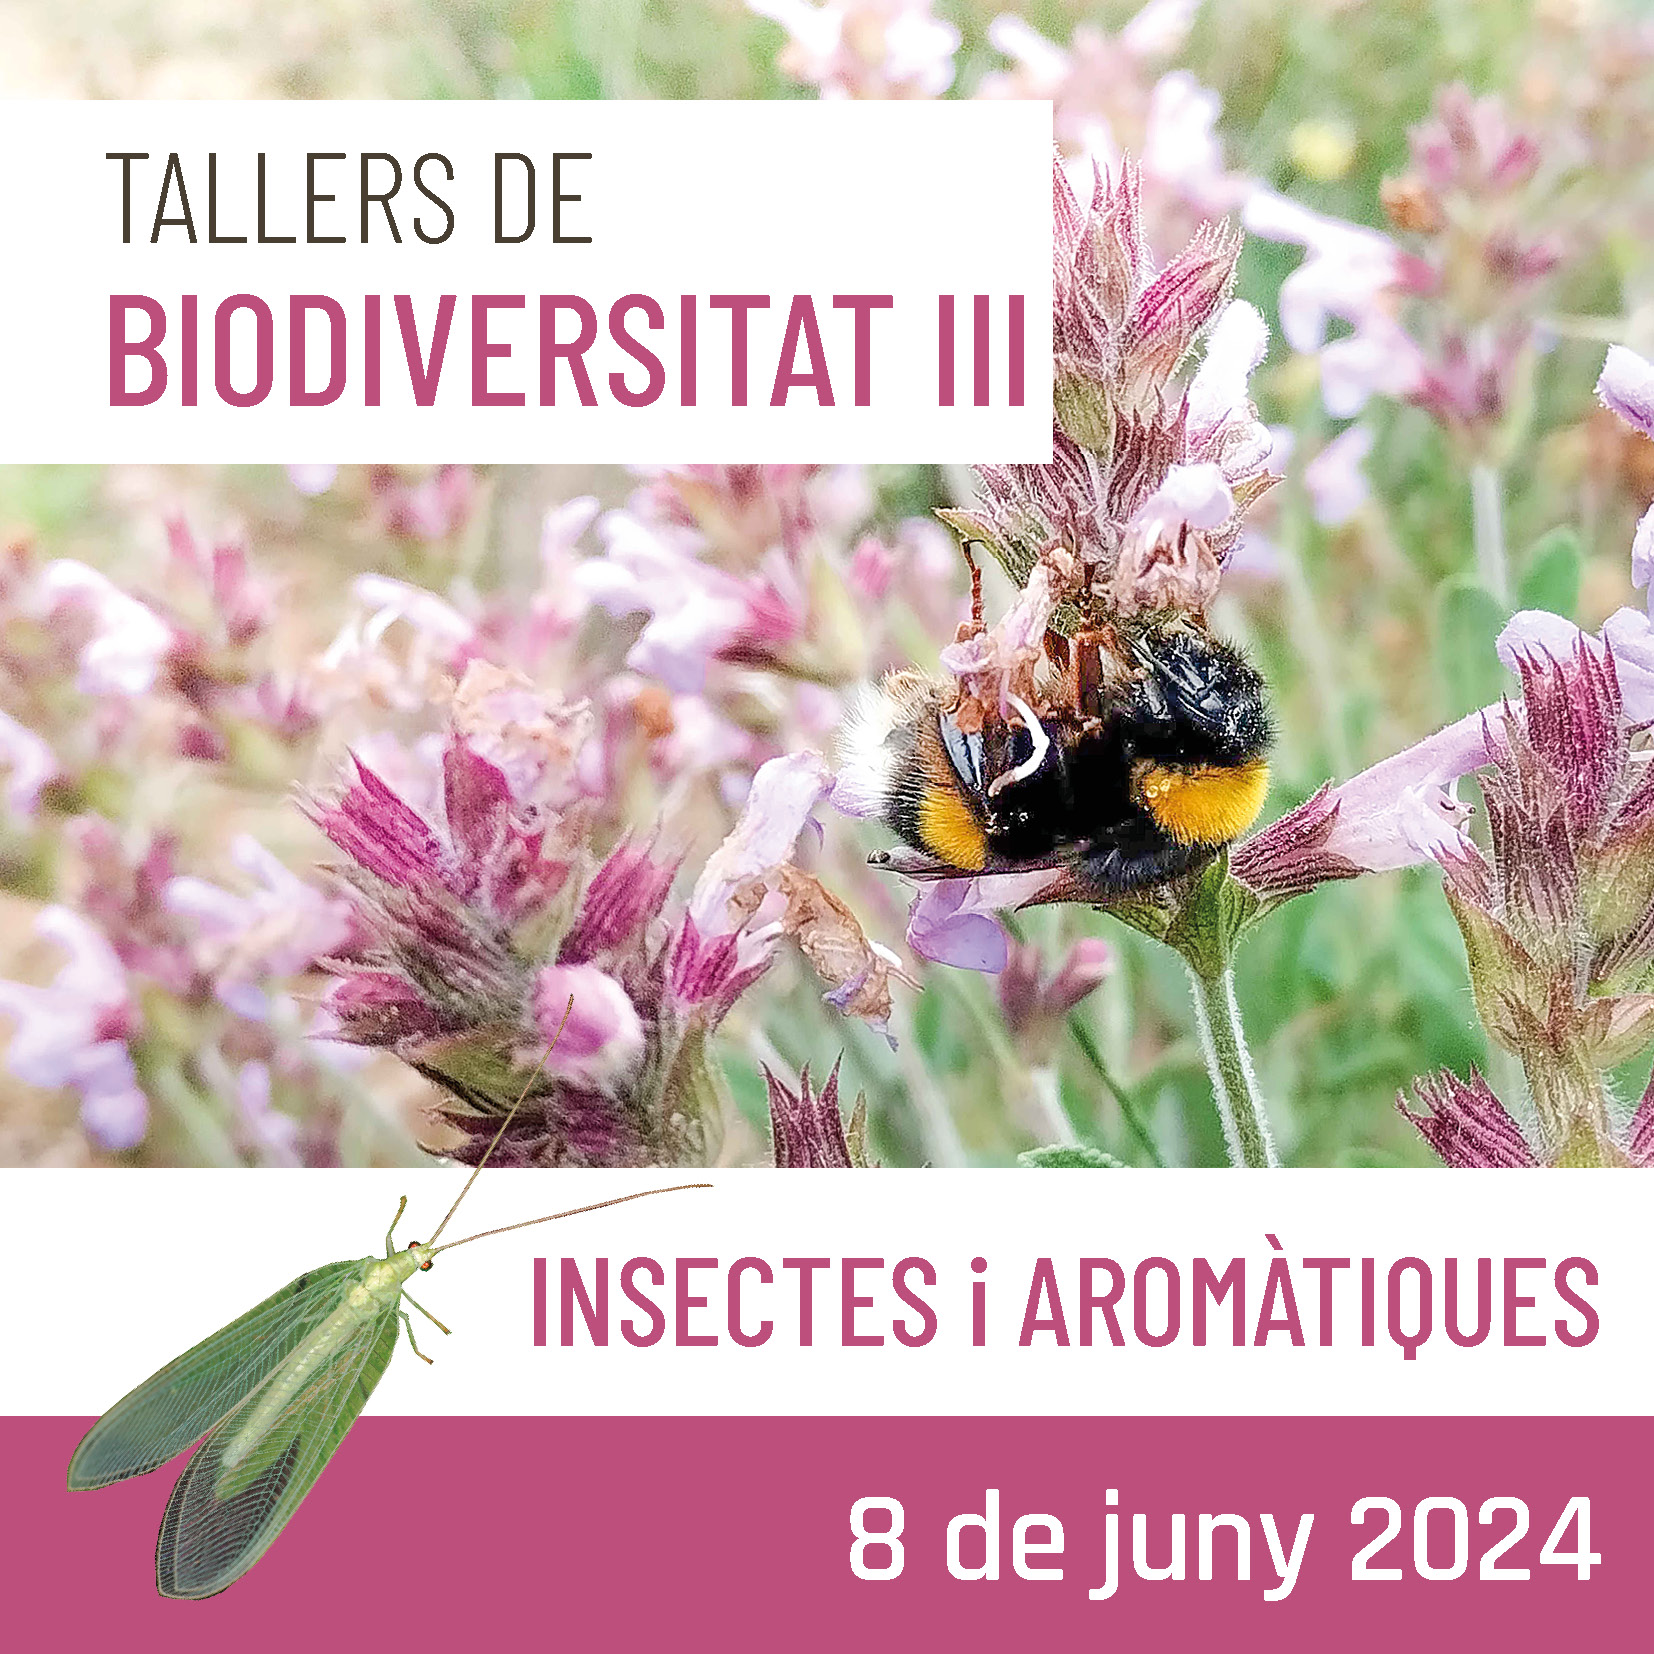 Tallers de Biodiversitat (III) – Insectes i aromàtiques